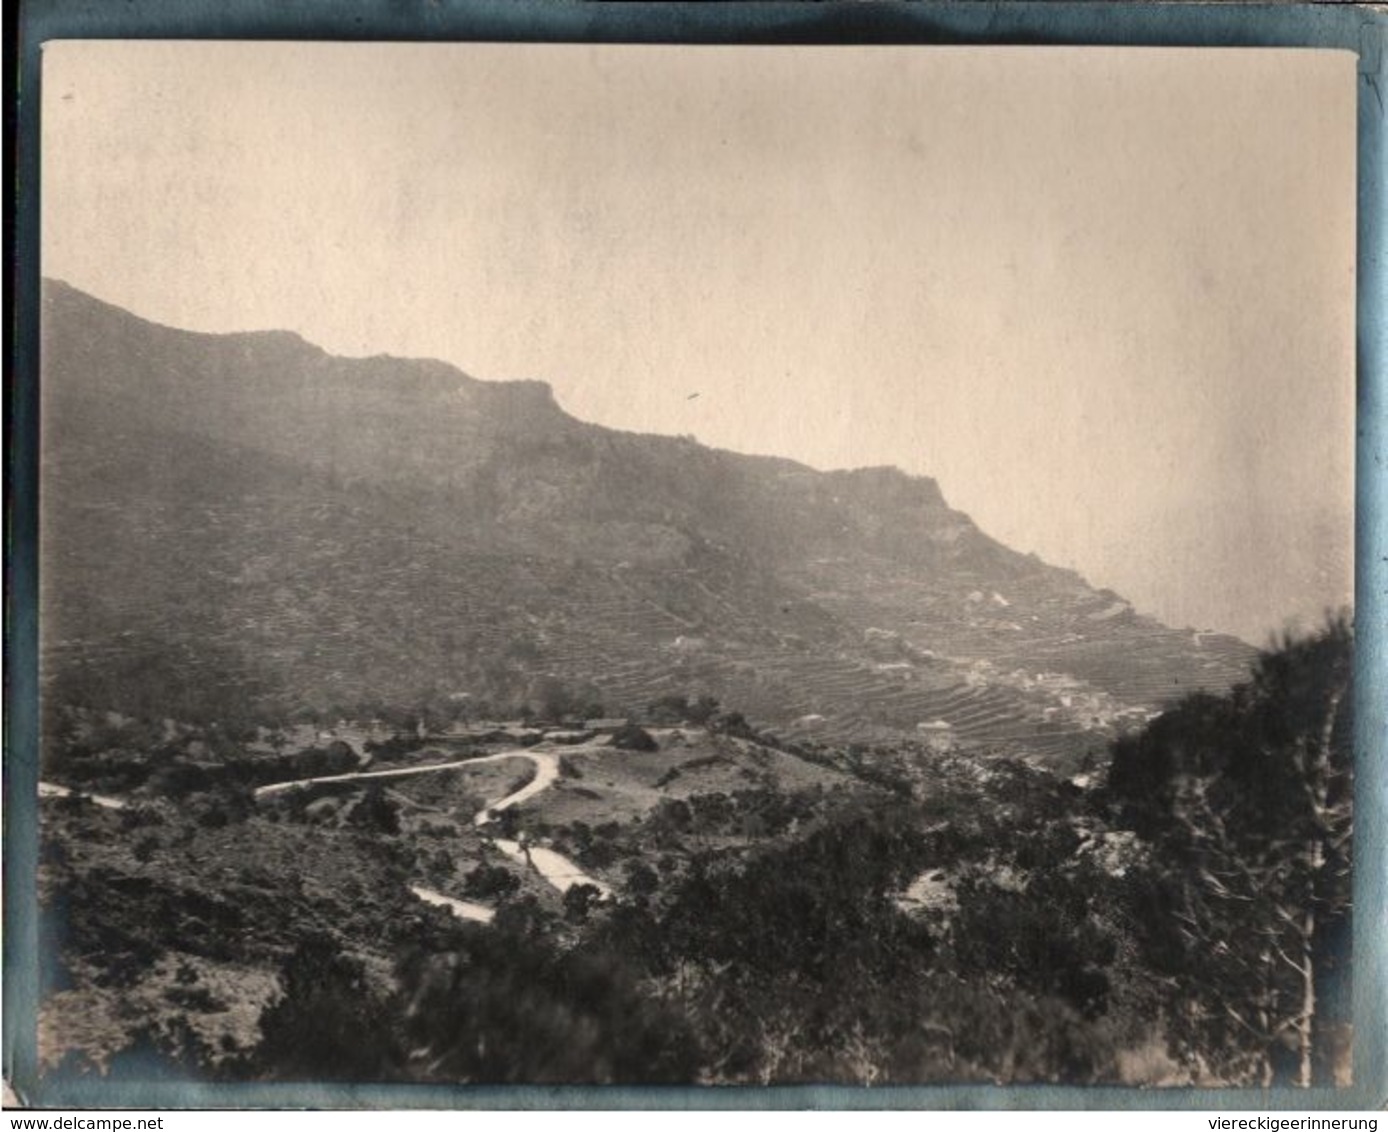 ! 4 alte Fotos, Photos, Mallorca , ca. 1909, Islas Baleares